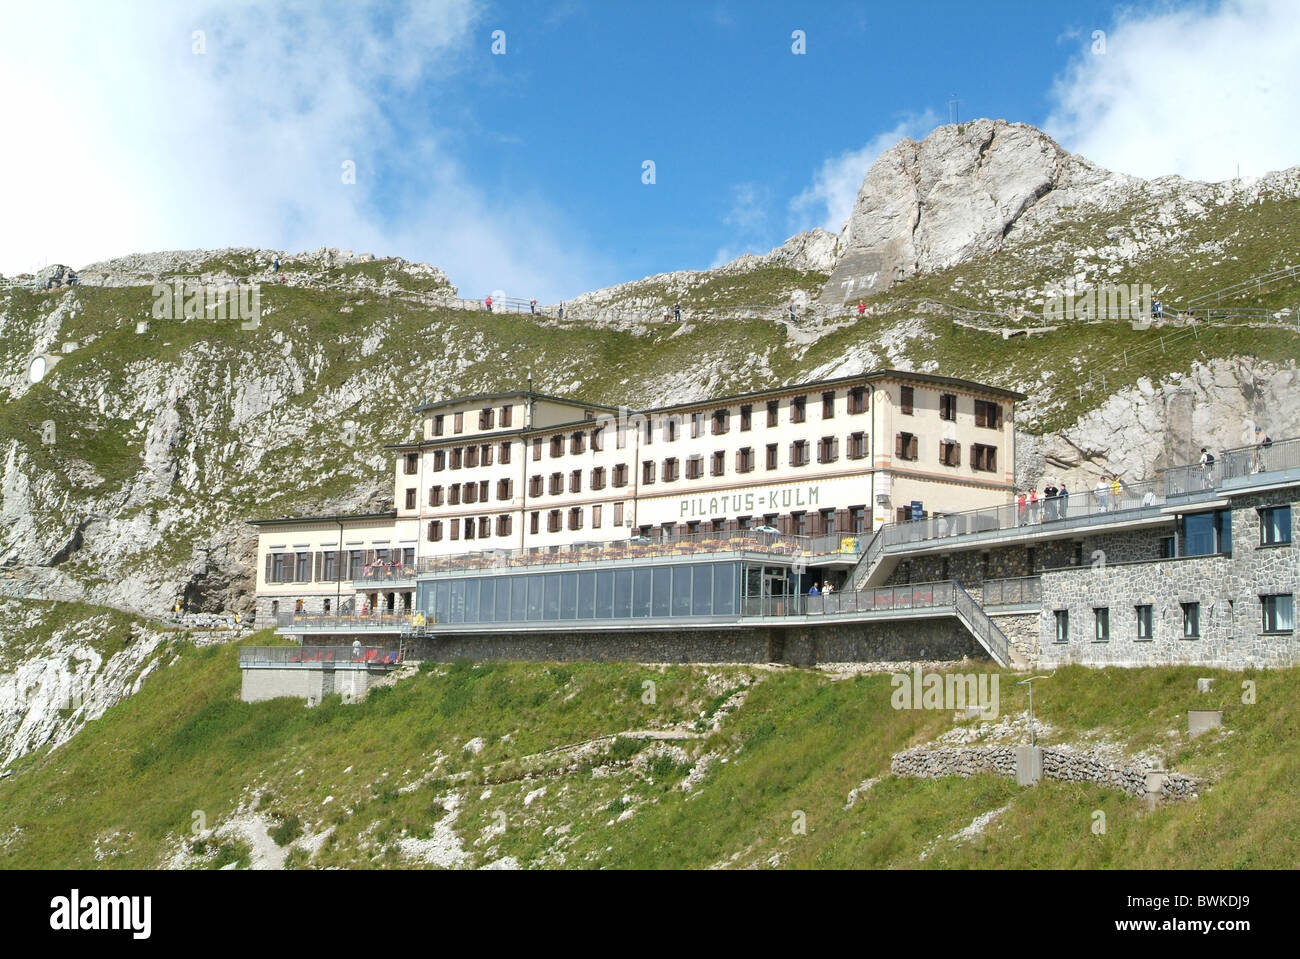 La construction de l'hôtel Pilatus-Kulm Pilatus pic du sommet de montagne Alpes Tourisme montagnes centrale Switze Banque D'Images